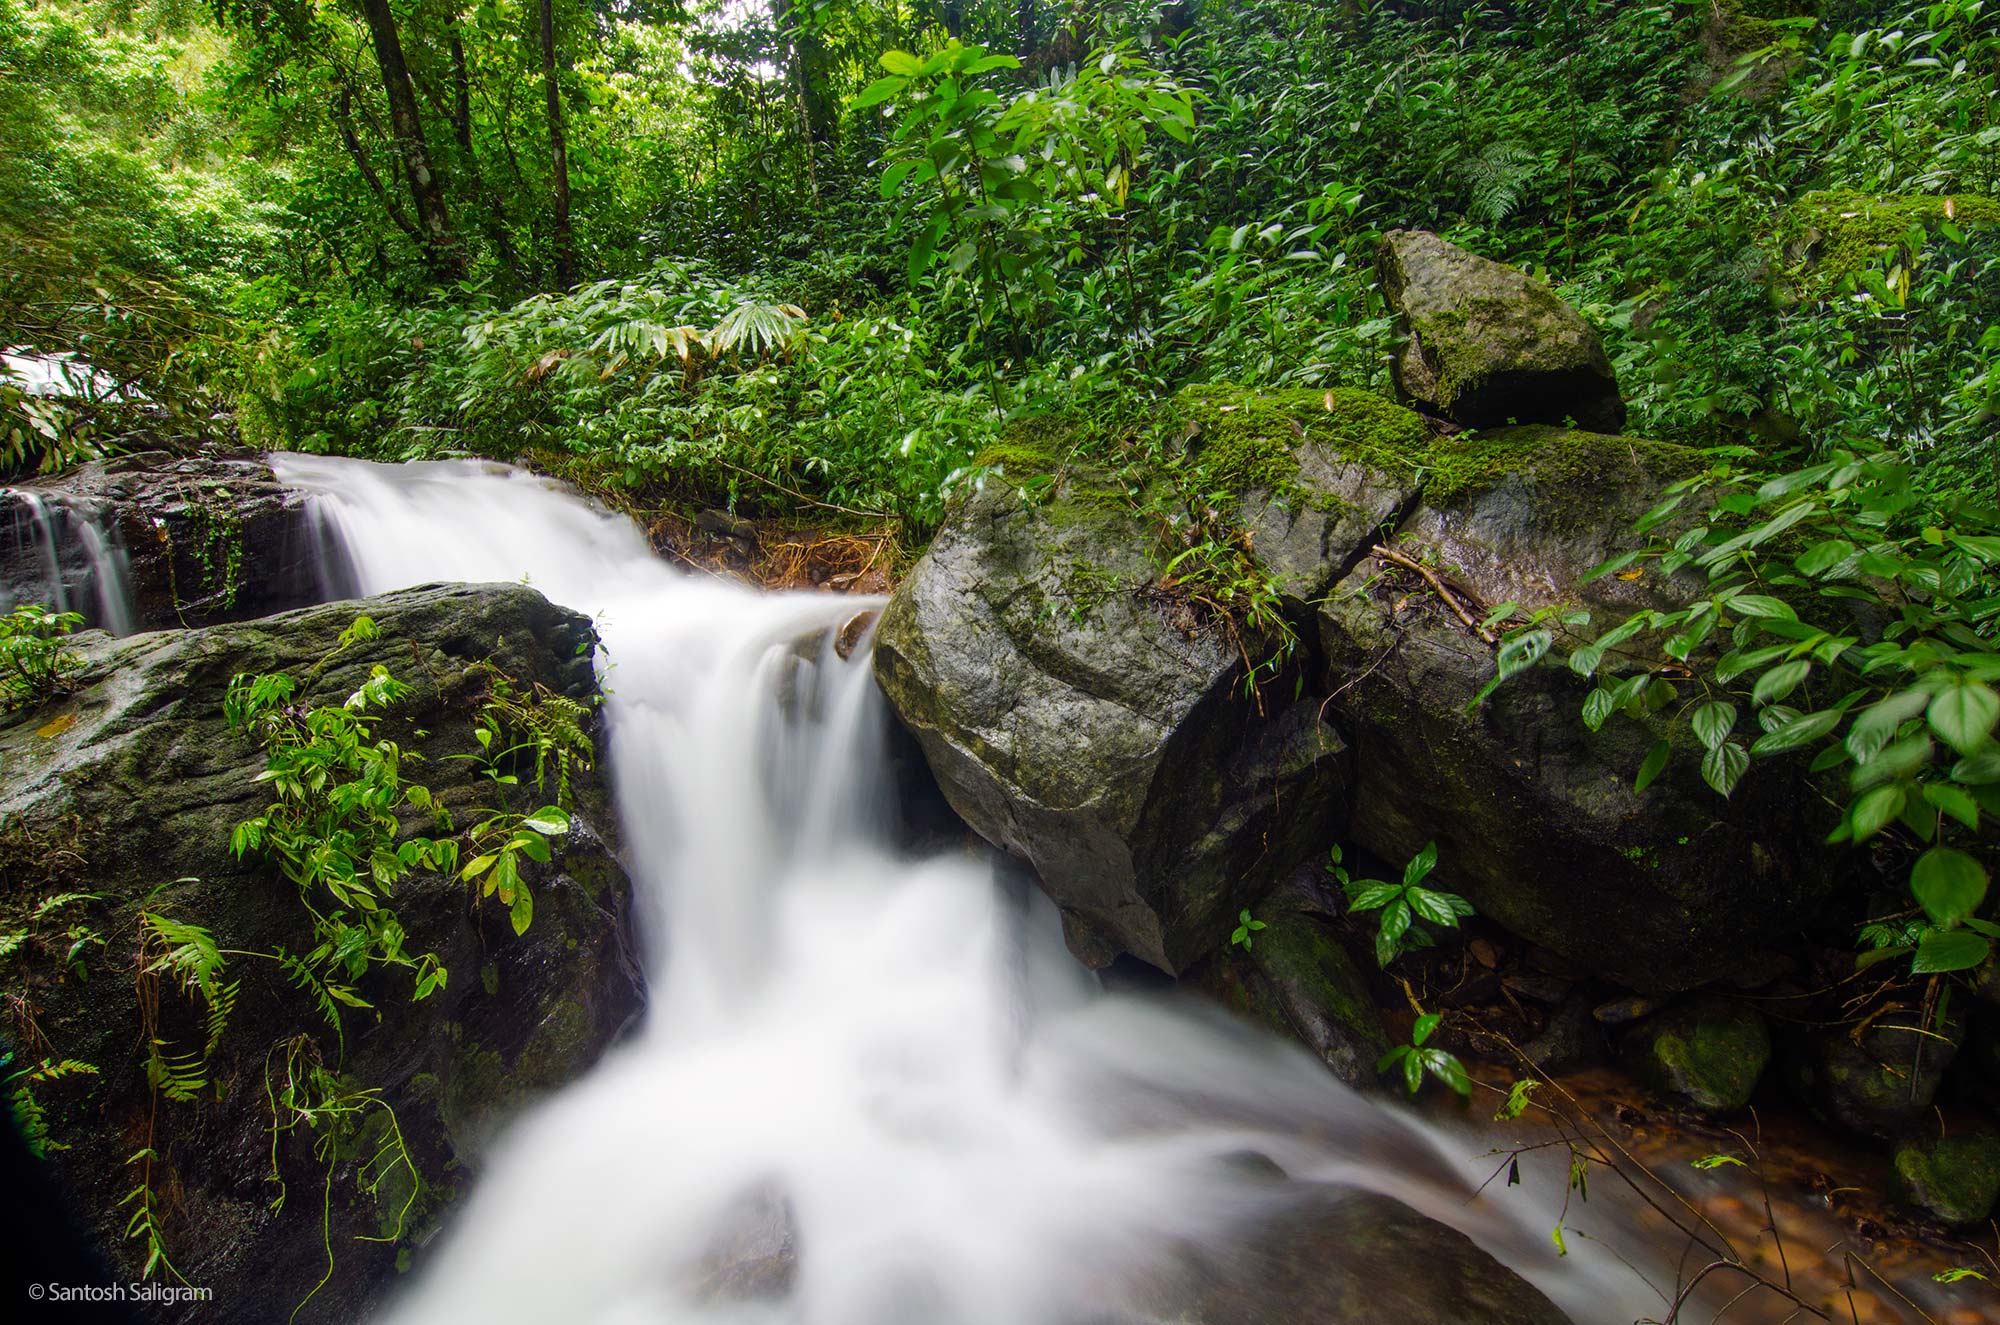 A forest stream in Coorg. © Santosh Saligram